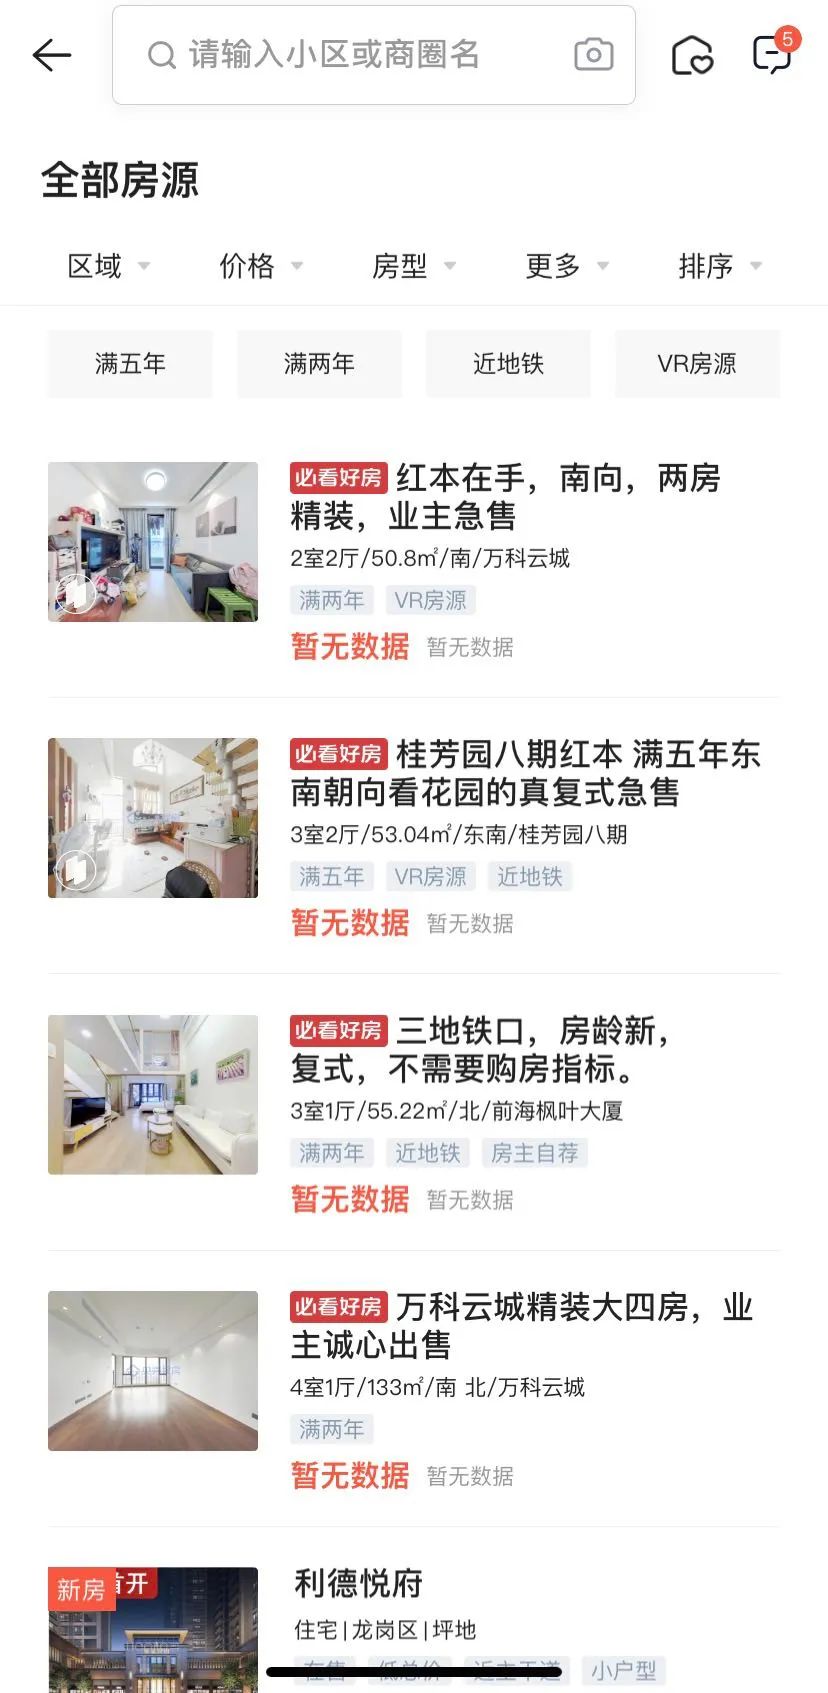 ▲贝壳找房APP显示，深圳二手房房源价格展示处显示为“暂无数据”。